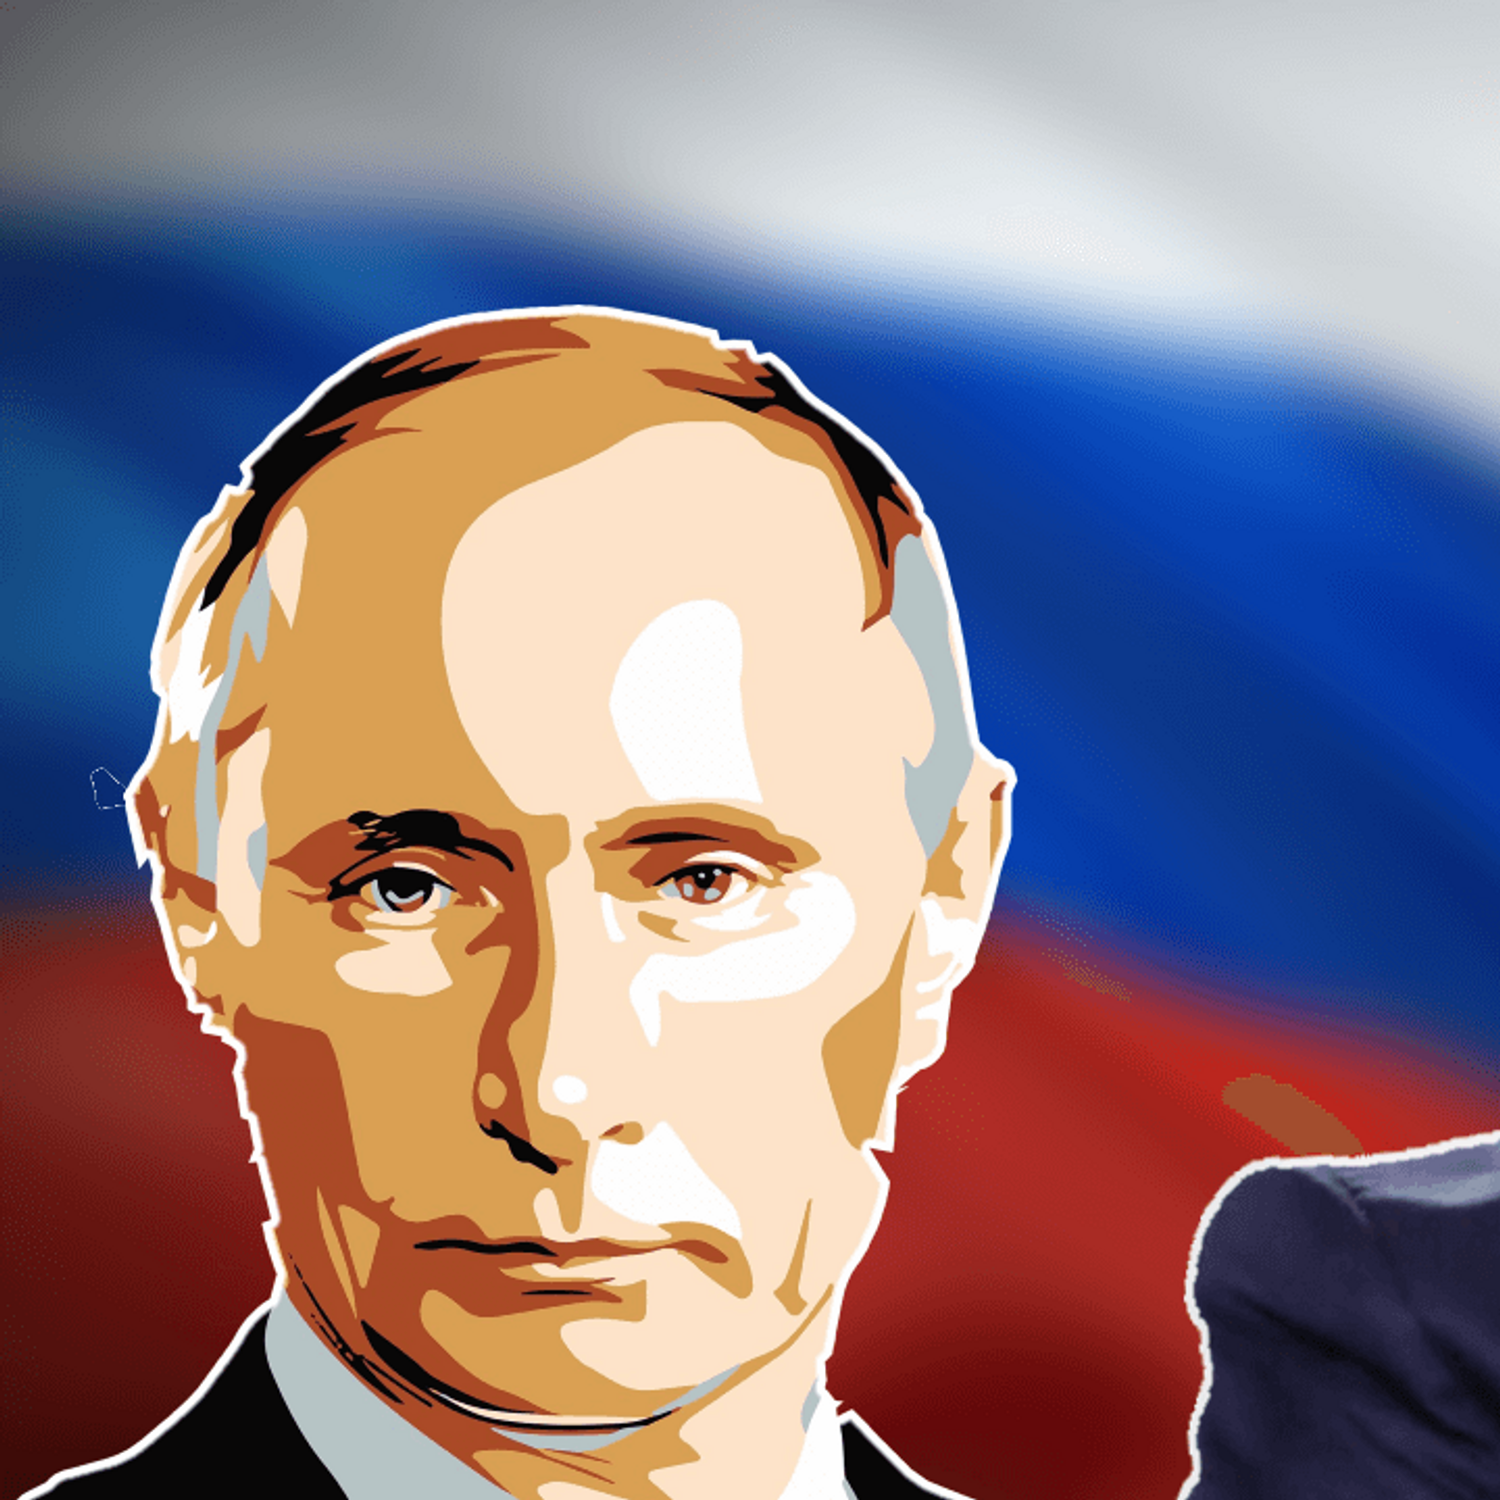 Ukraine : Macron et Poutine d'accord sur "la nécessité d'une...